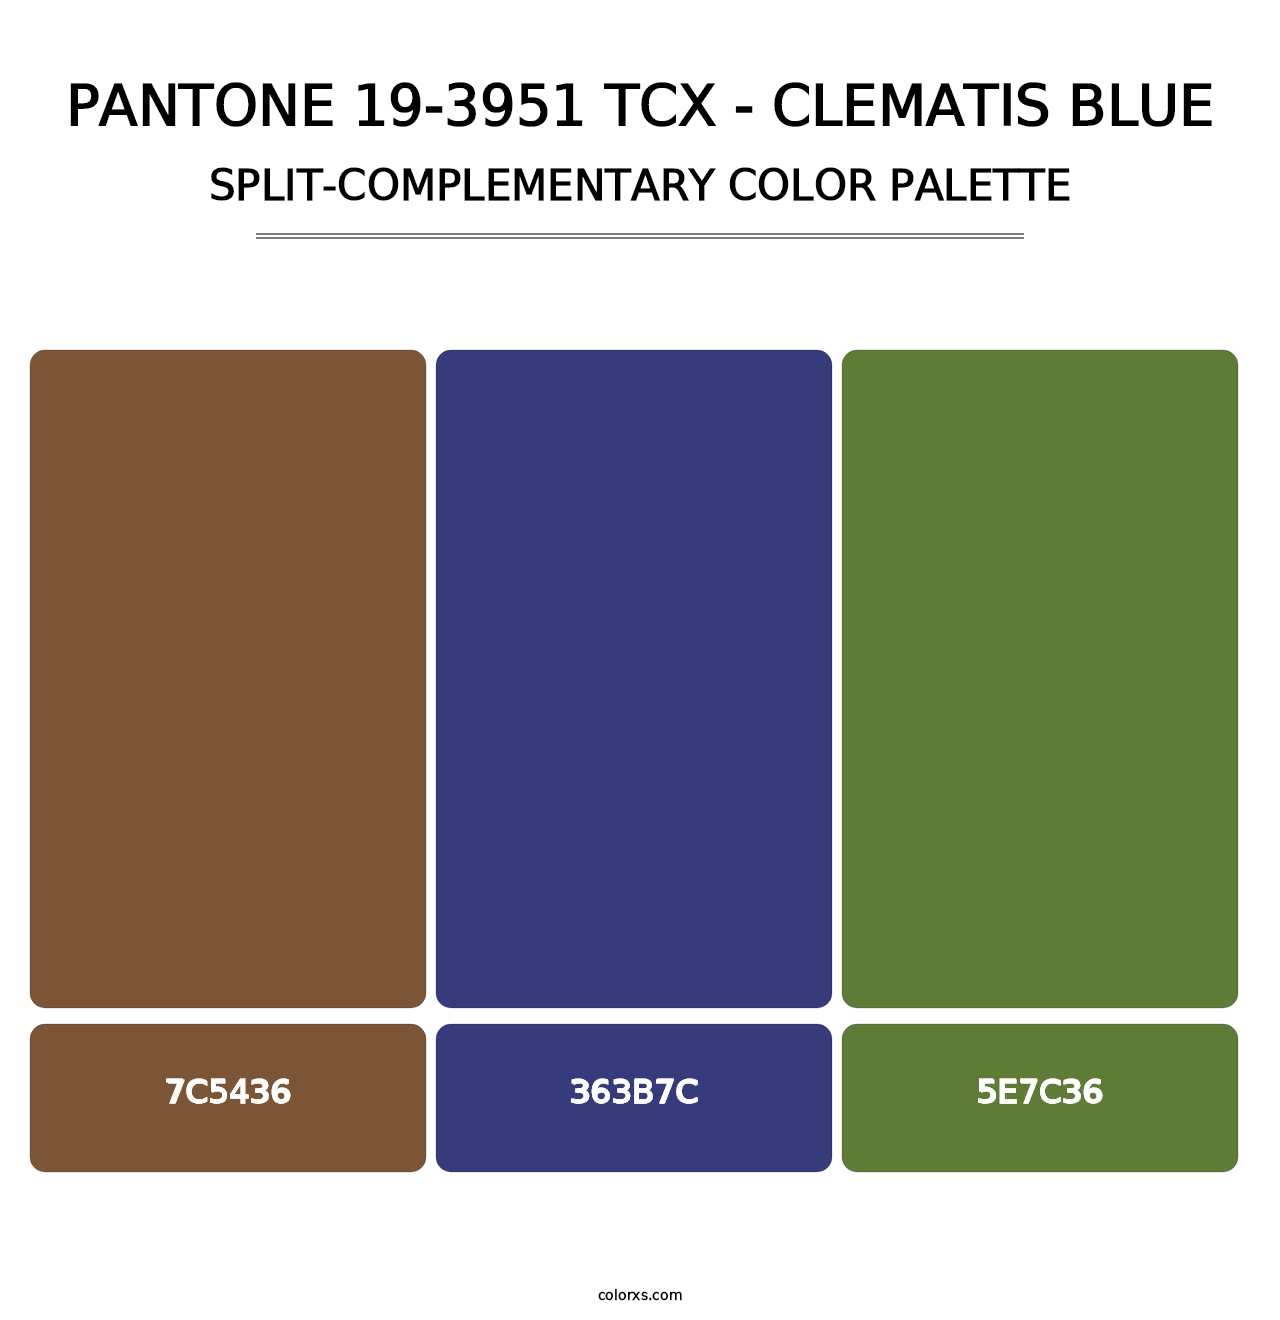 PANTONE 19-3951 TCX - Clematis Blue - Split-Complementary Color Palette